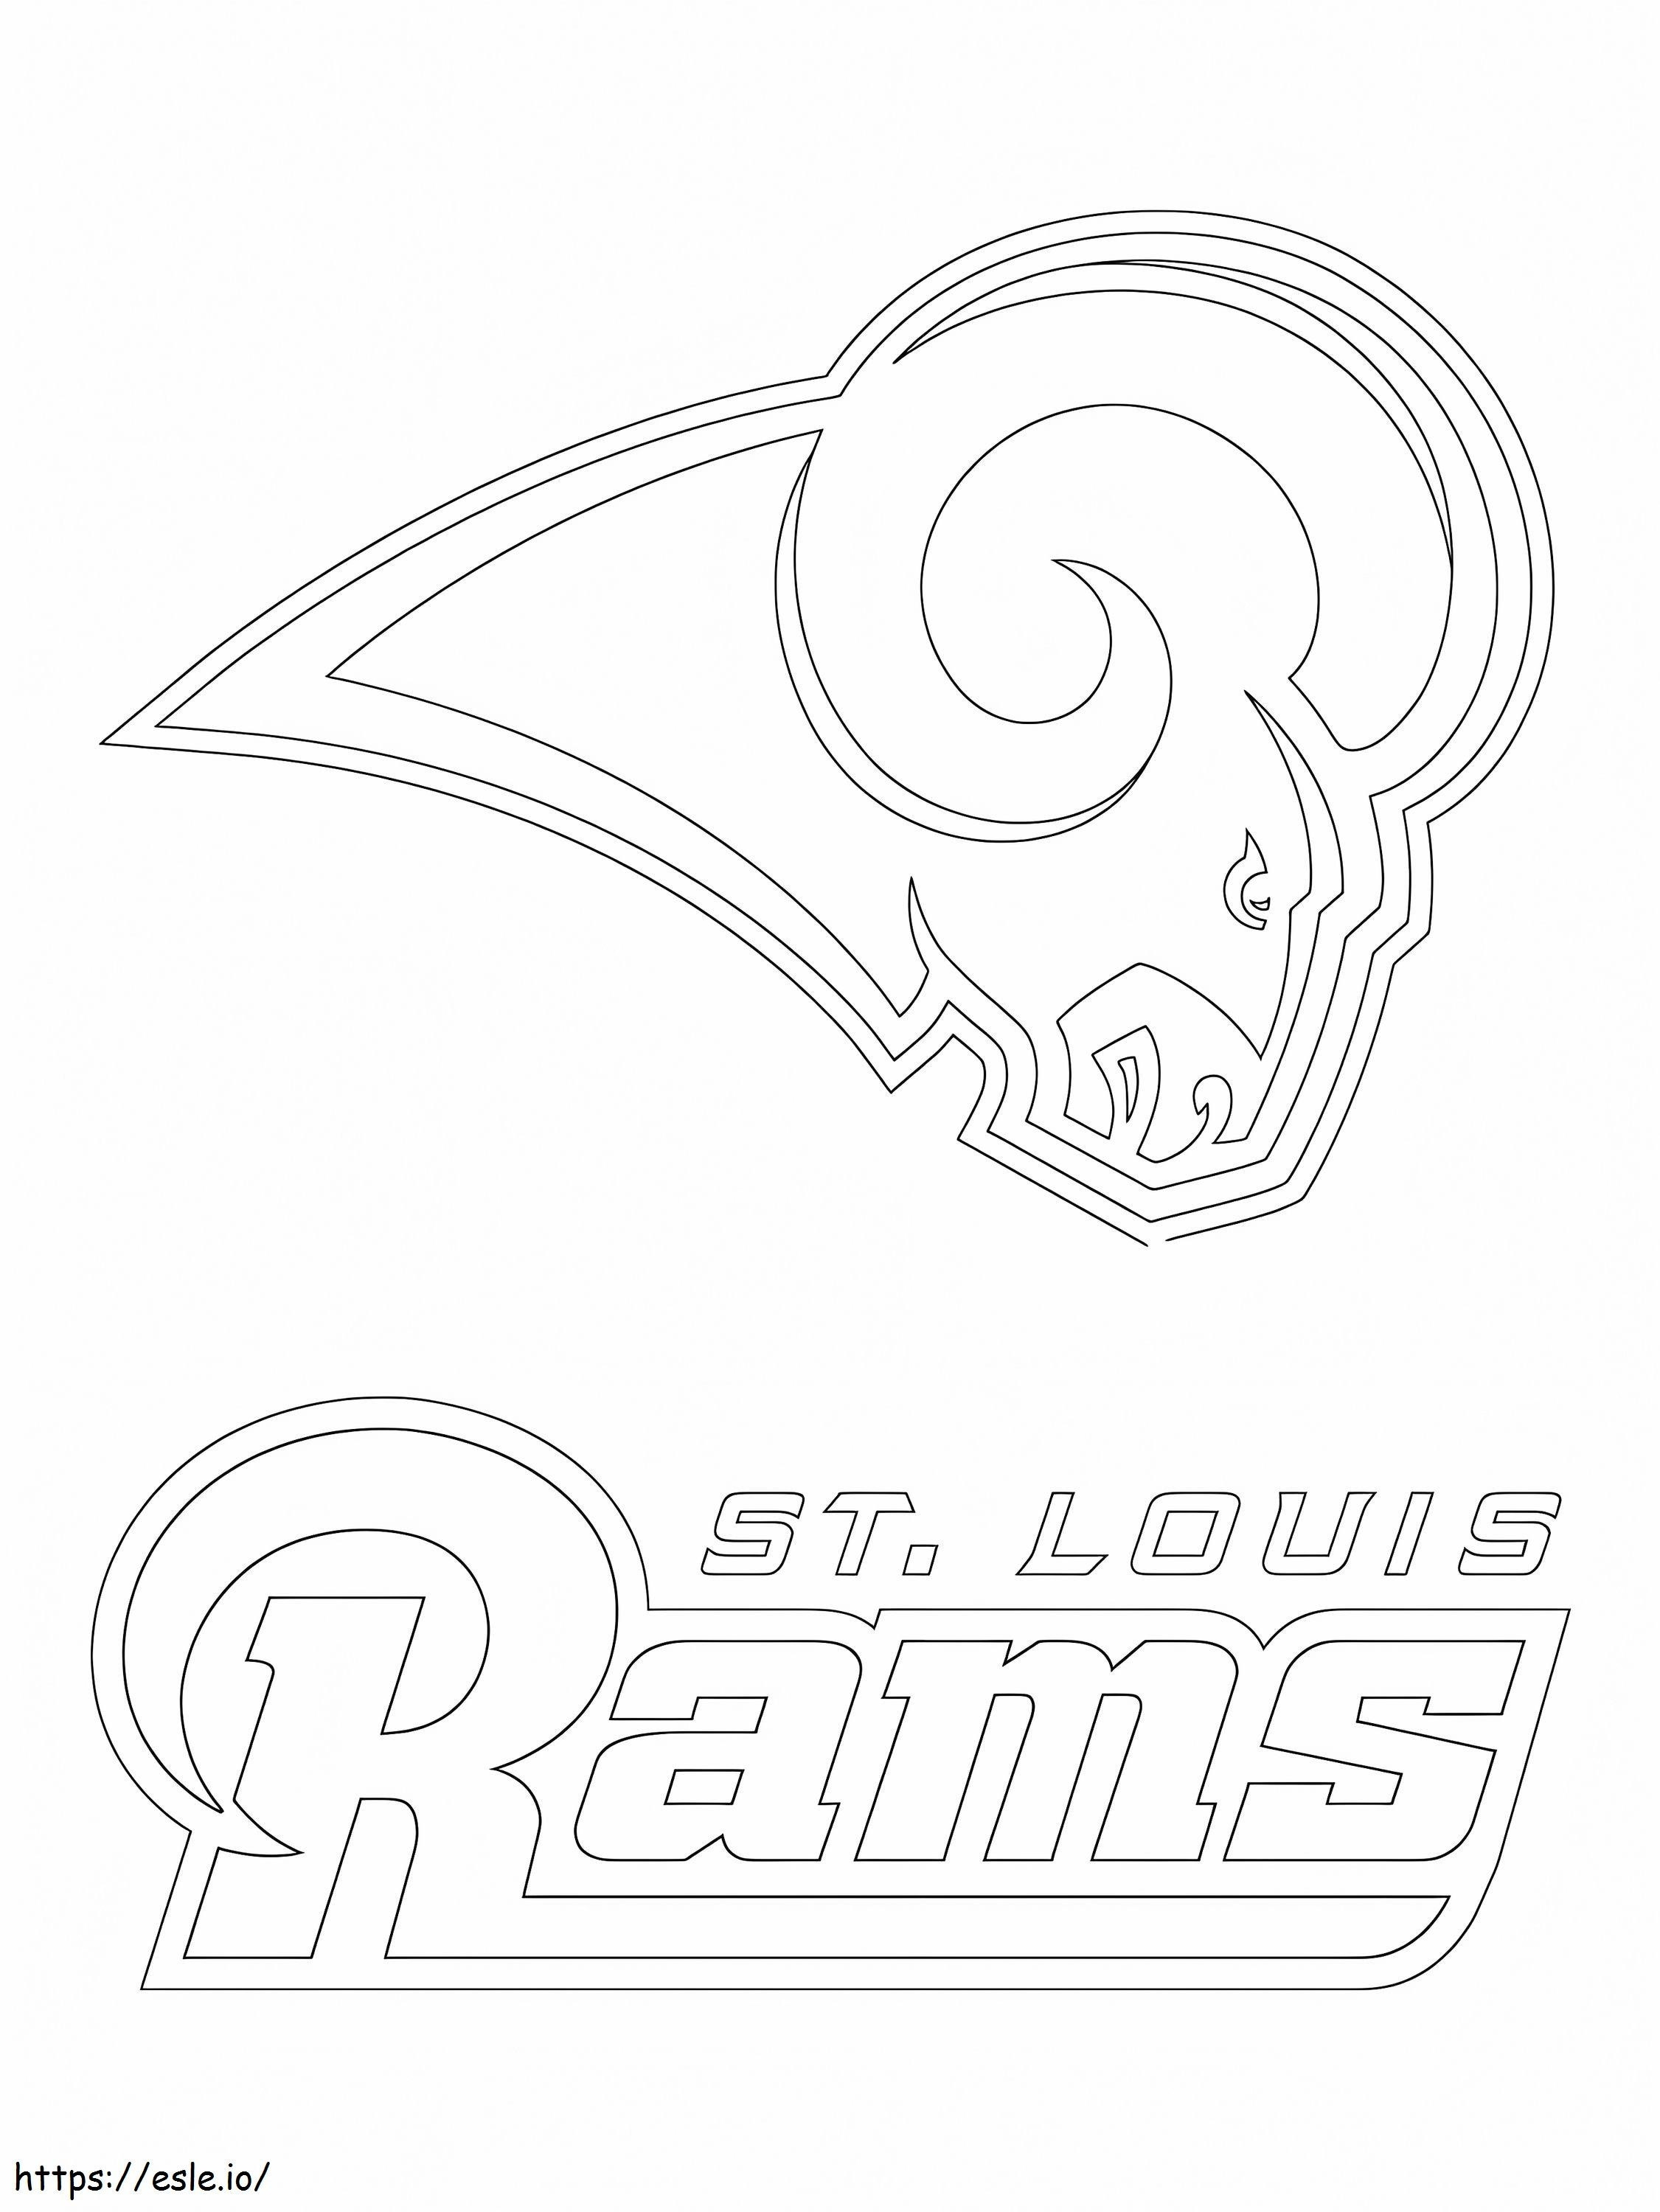 Logo St. Louis Rams kolorowanka